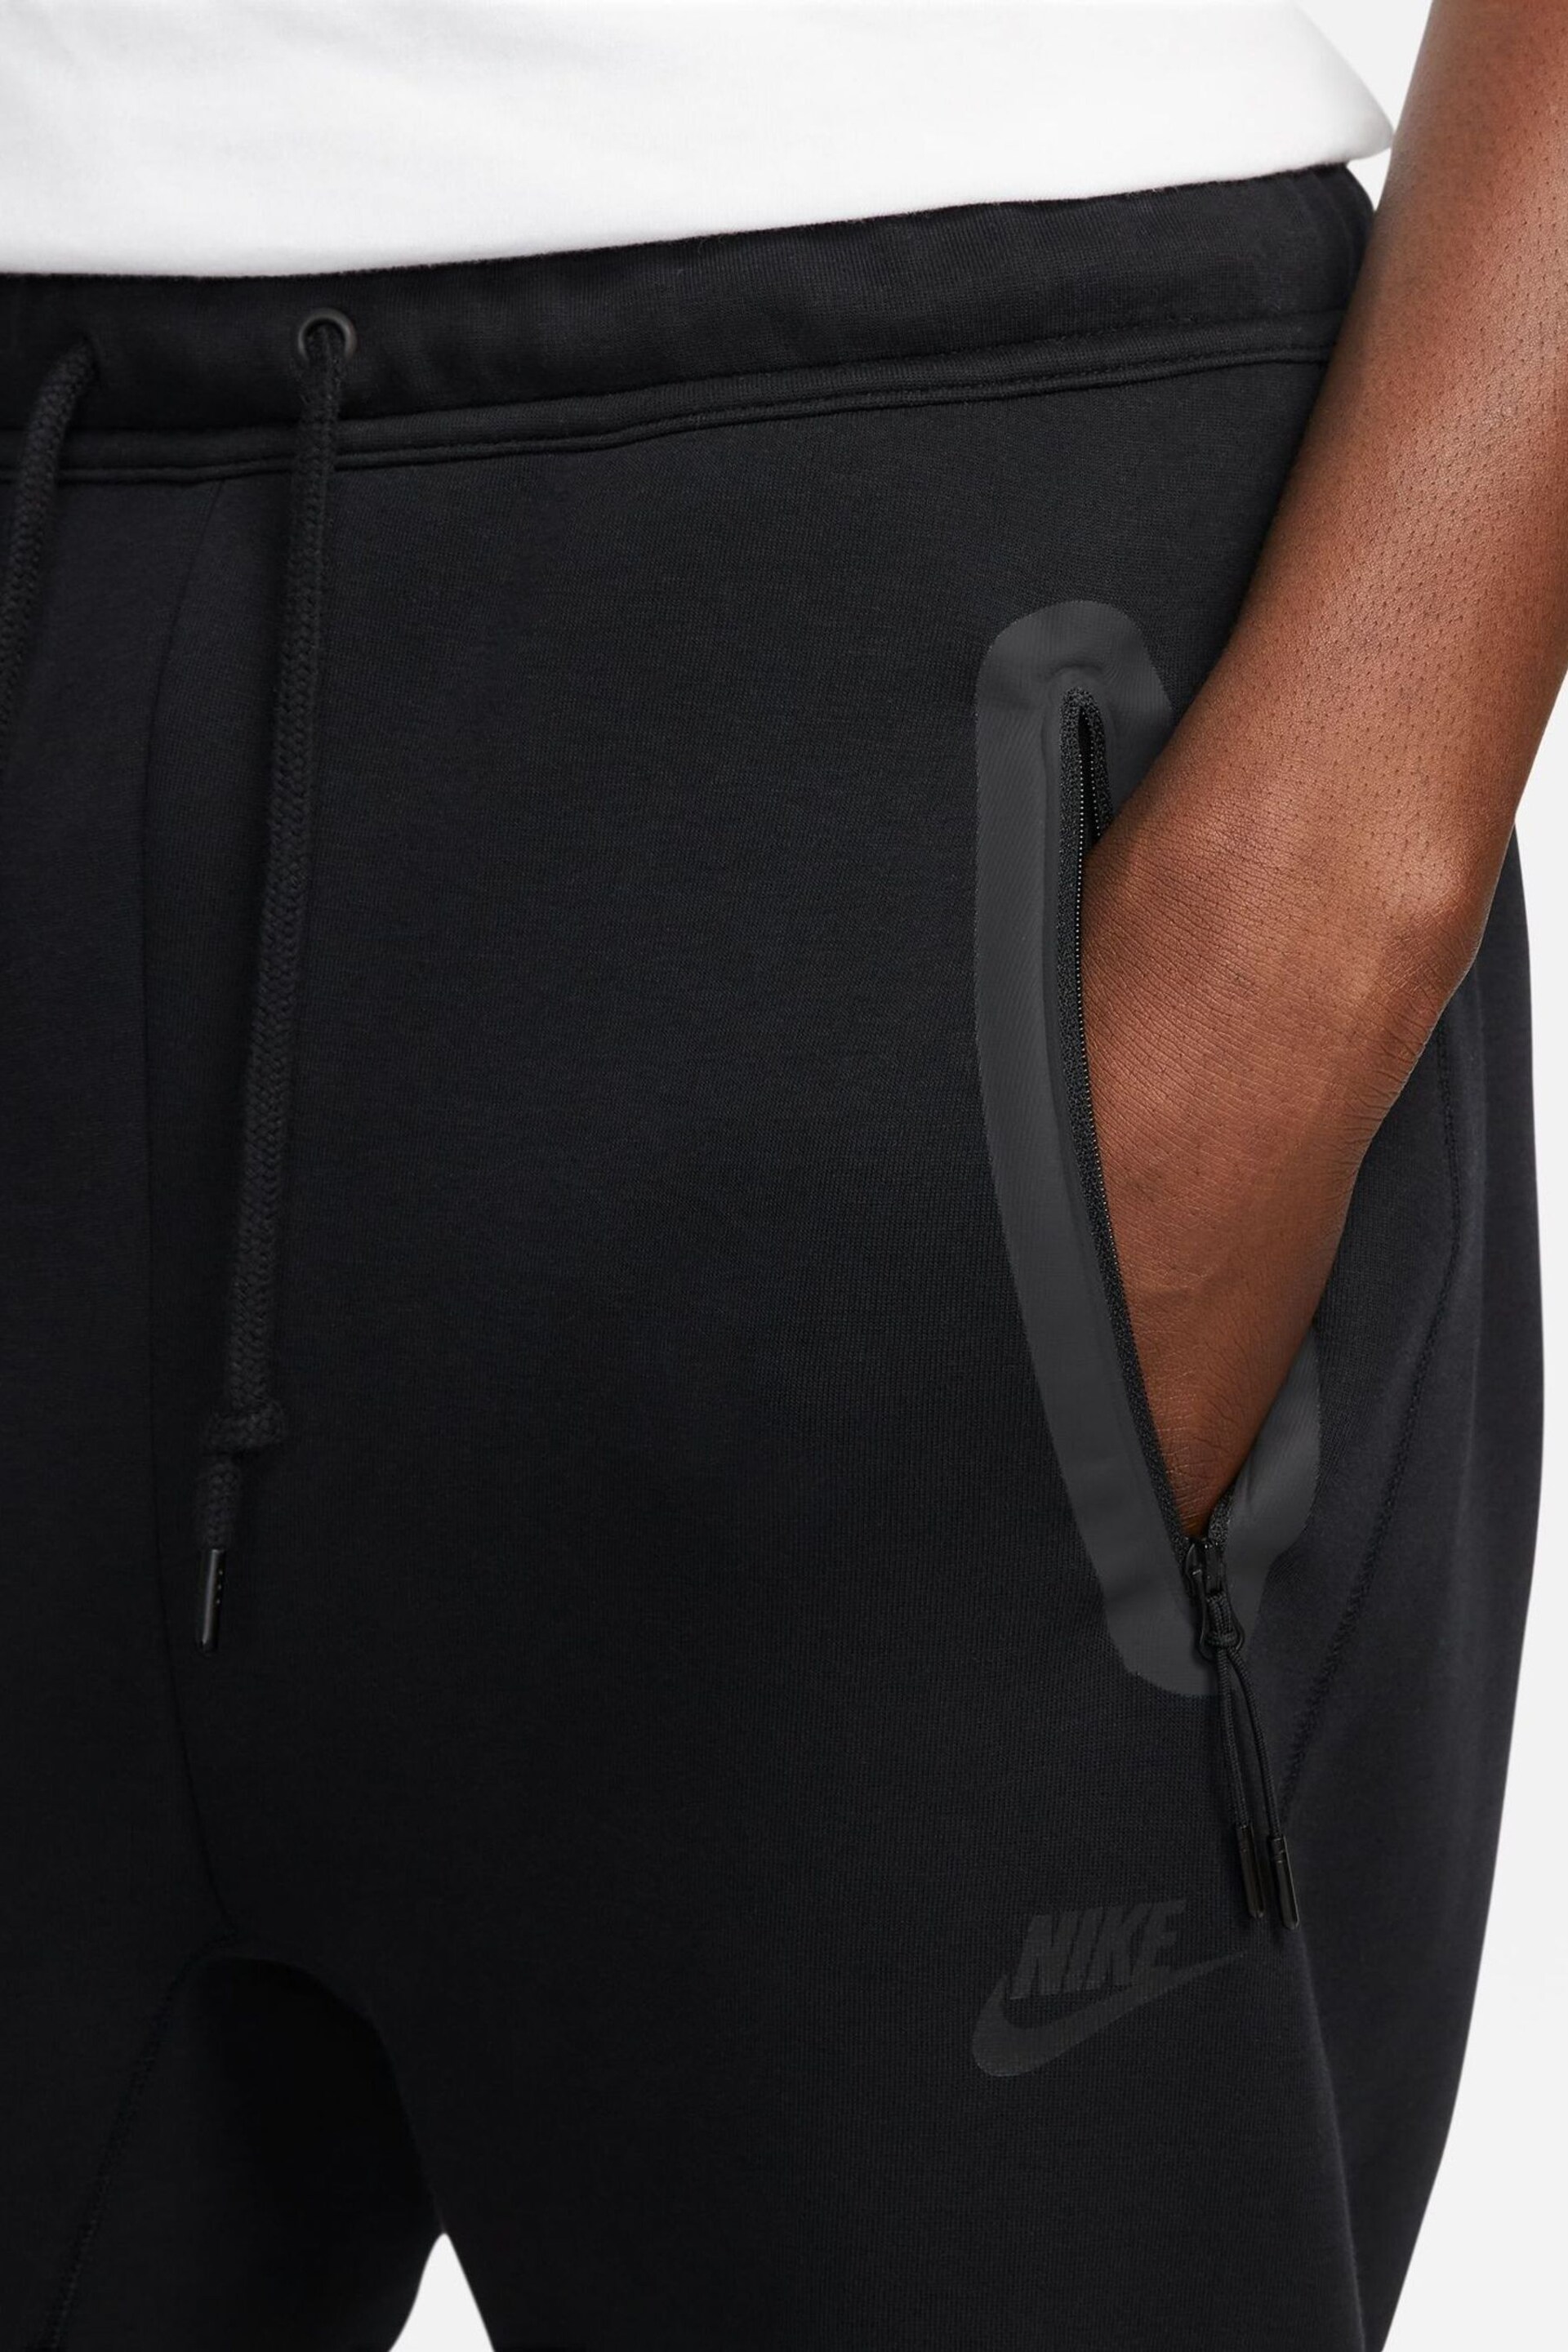 Nike Black Tech Fleece Open Hem Joggers - Image 3 of 13